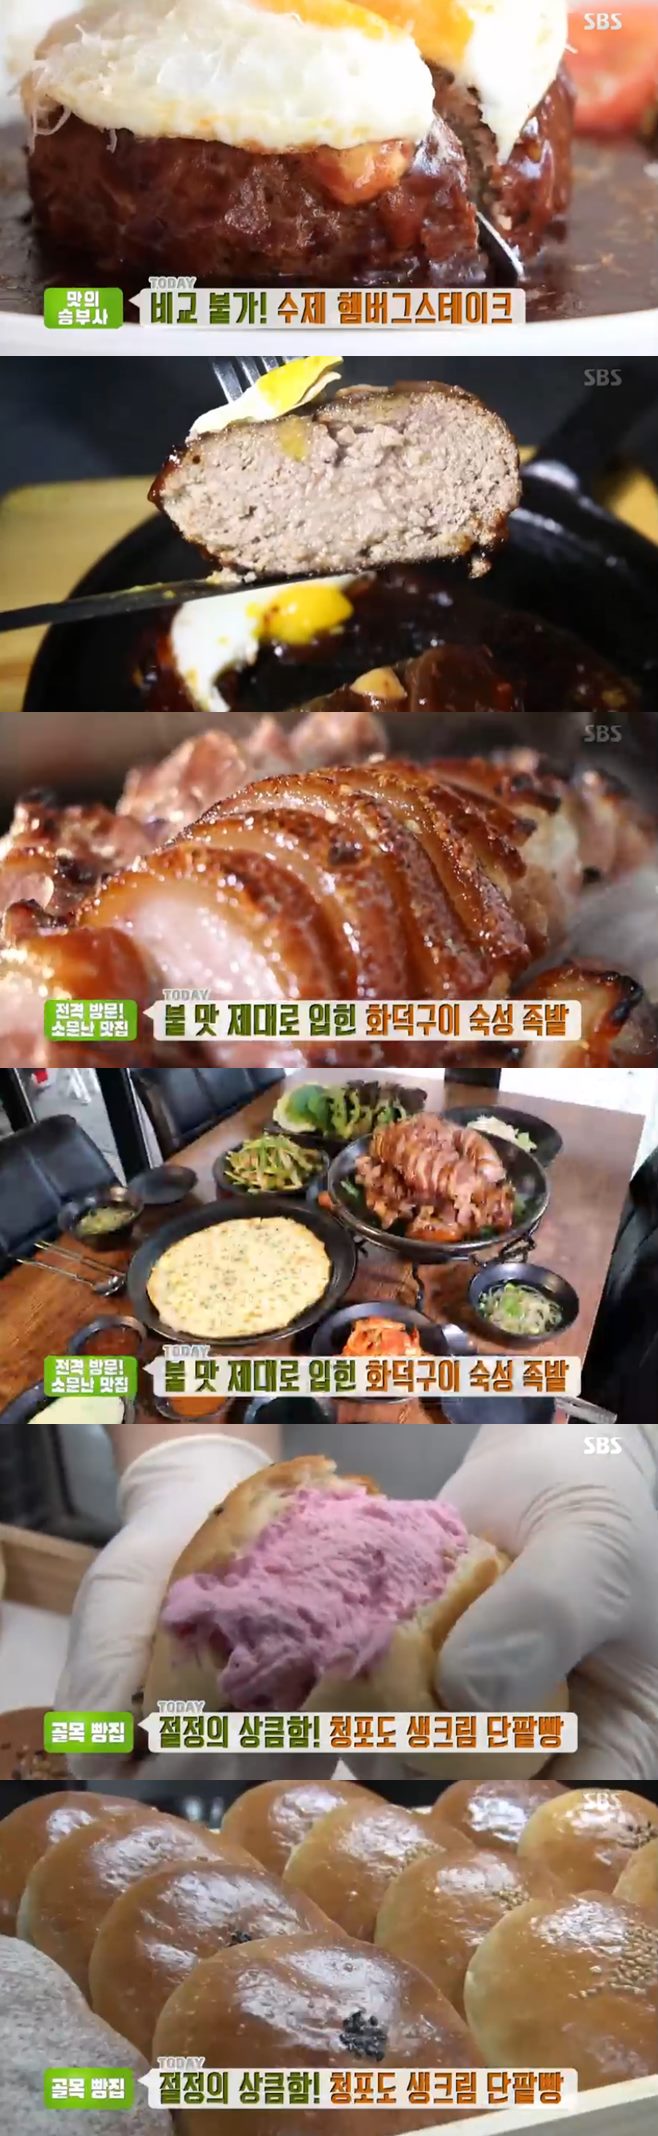 ‘생방송투데이’ 수제 햄버그스테이크vs화덕구이숙성족발vs청포도생크림단팥빵 맛집